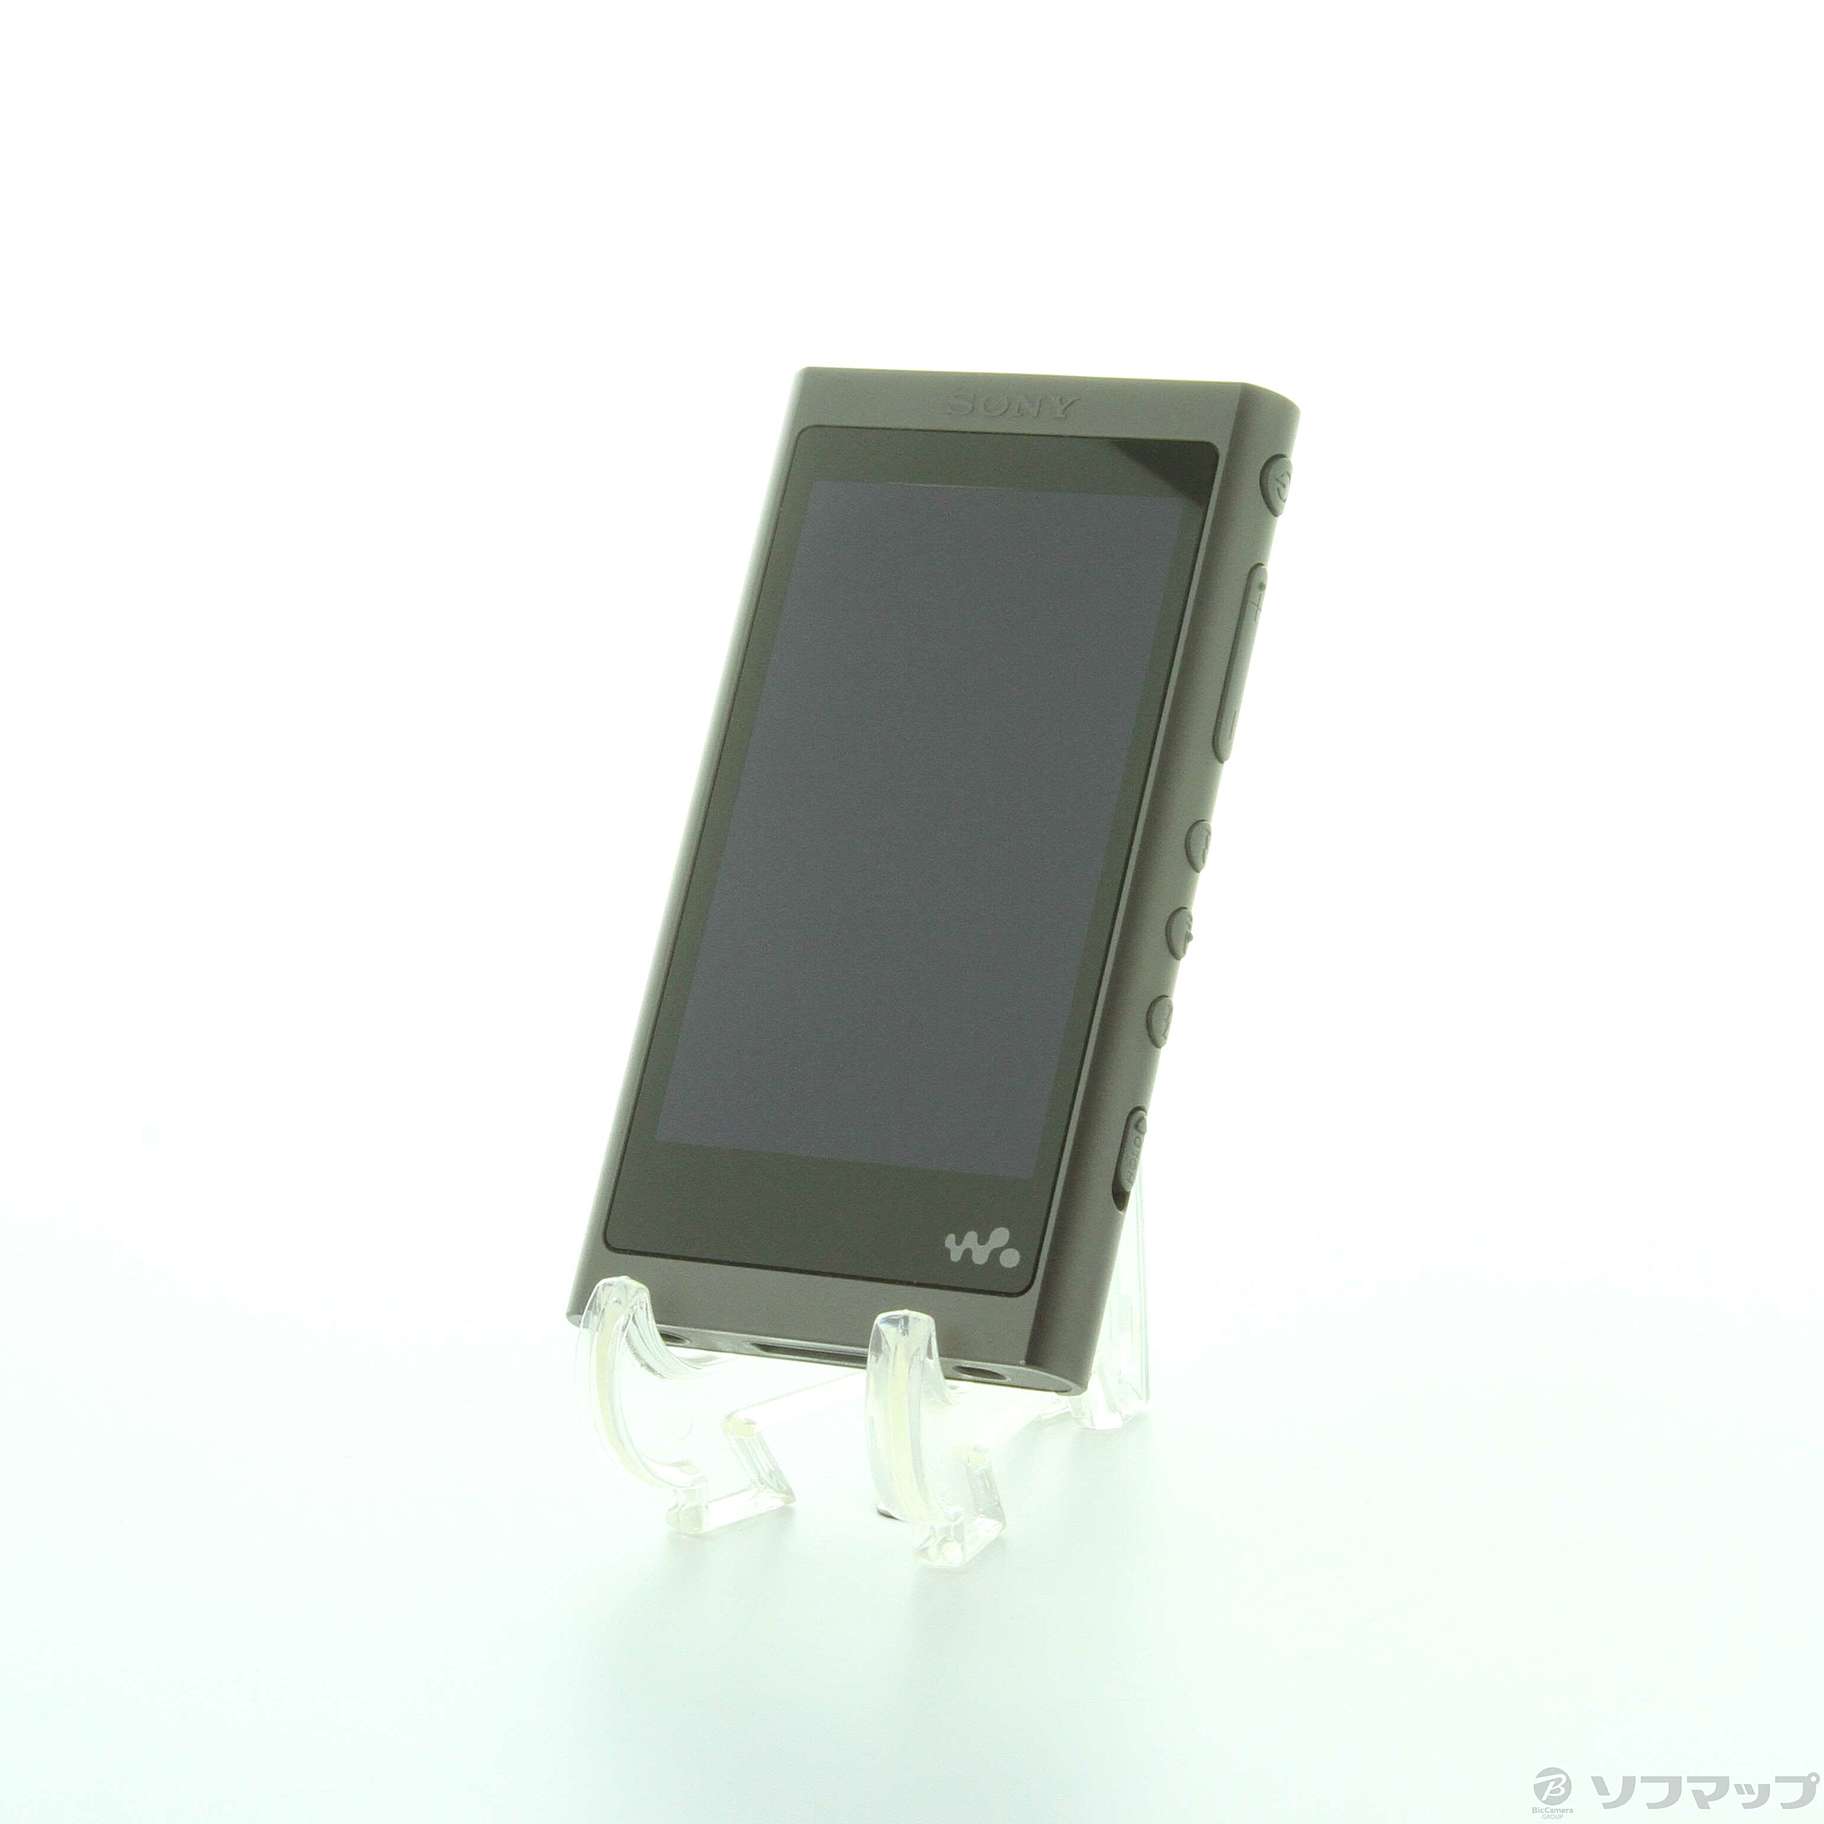 中古】WALKMAN A50シリーズ メモリ16GB+microSD グレイッシュブラック